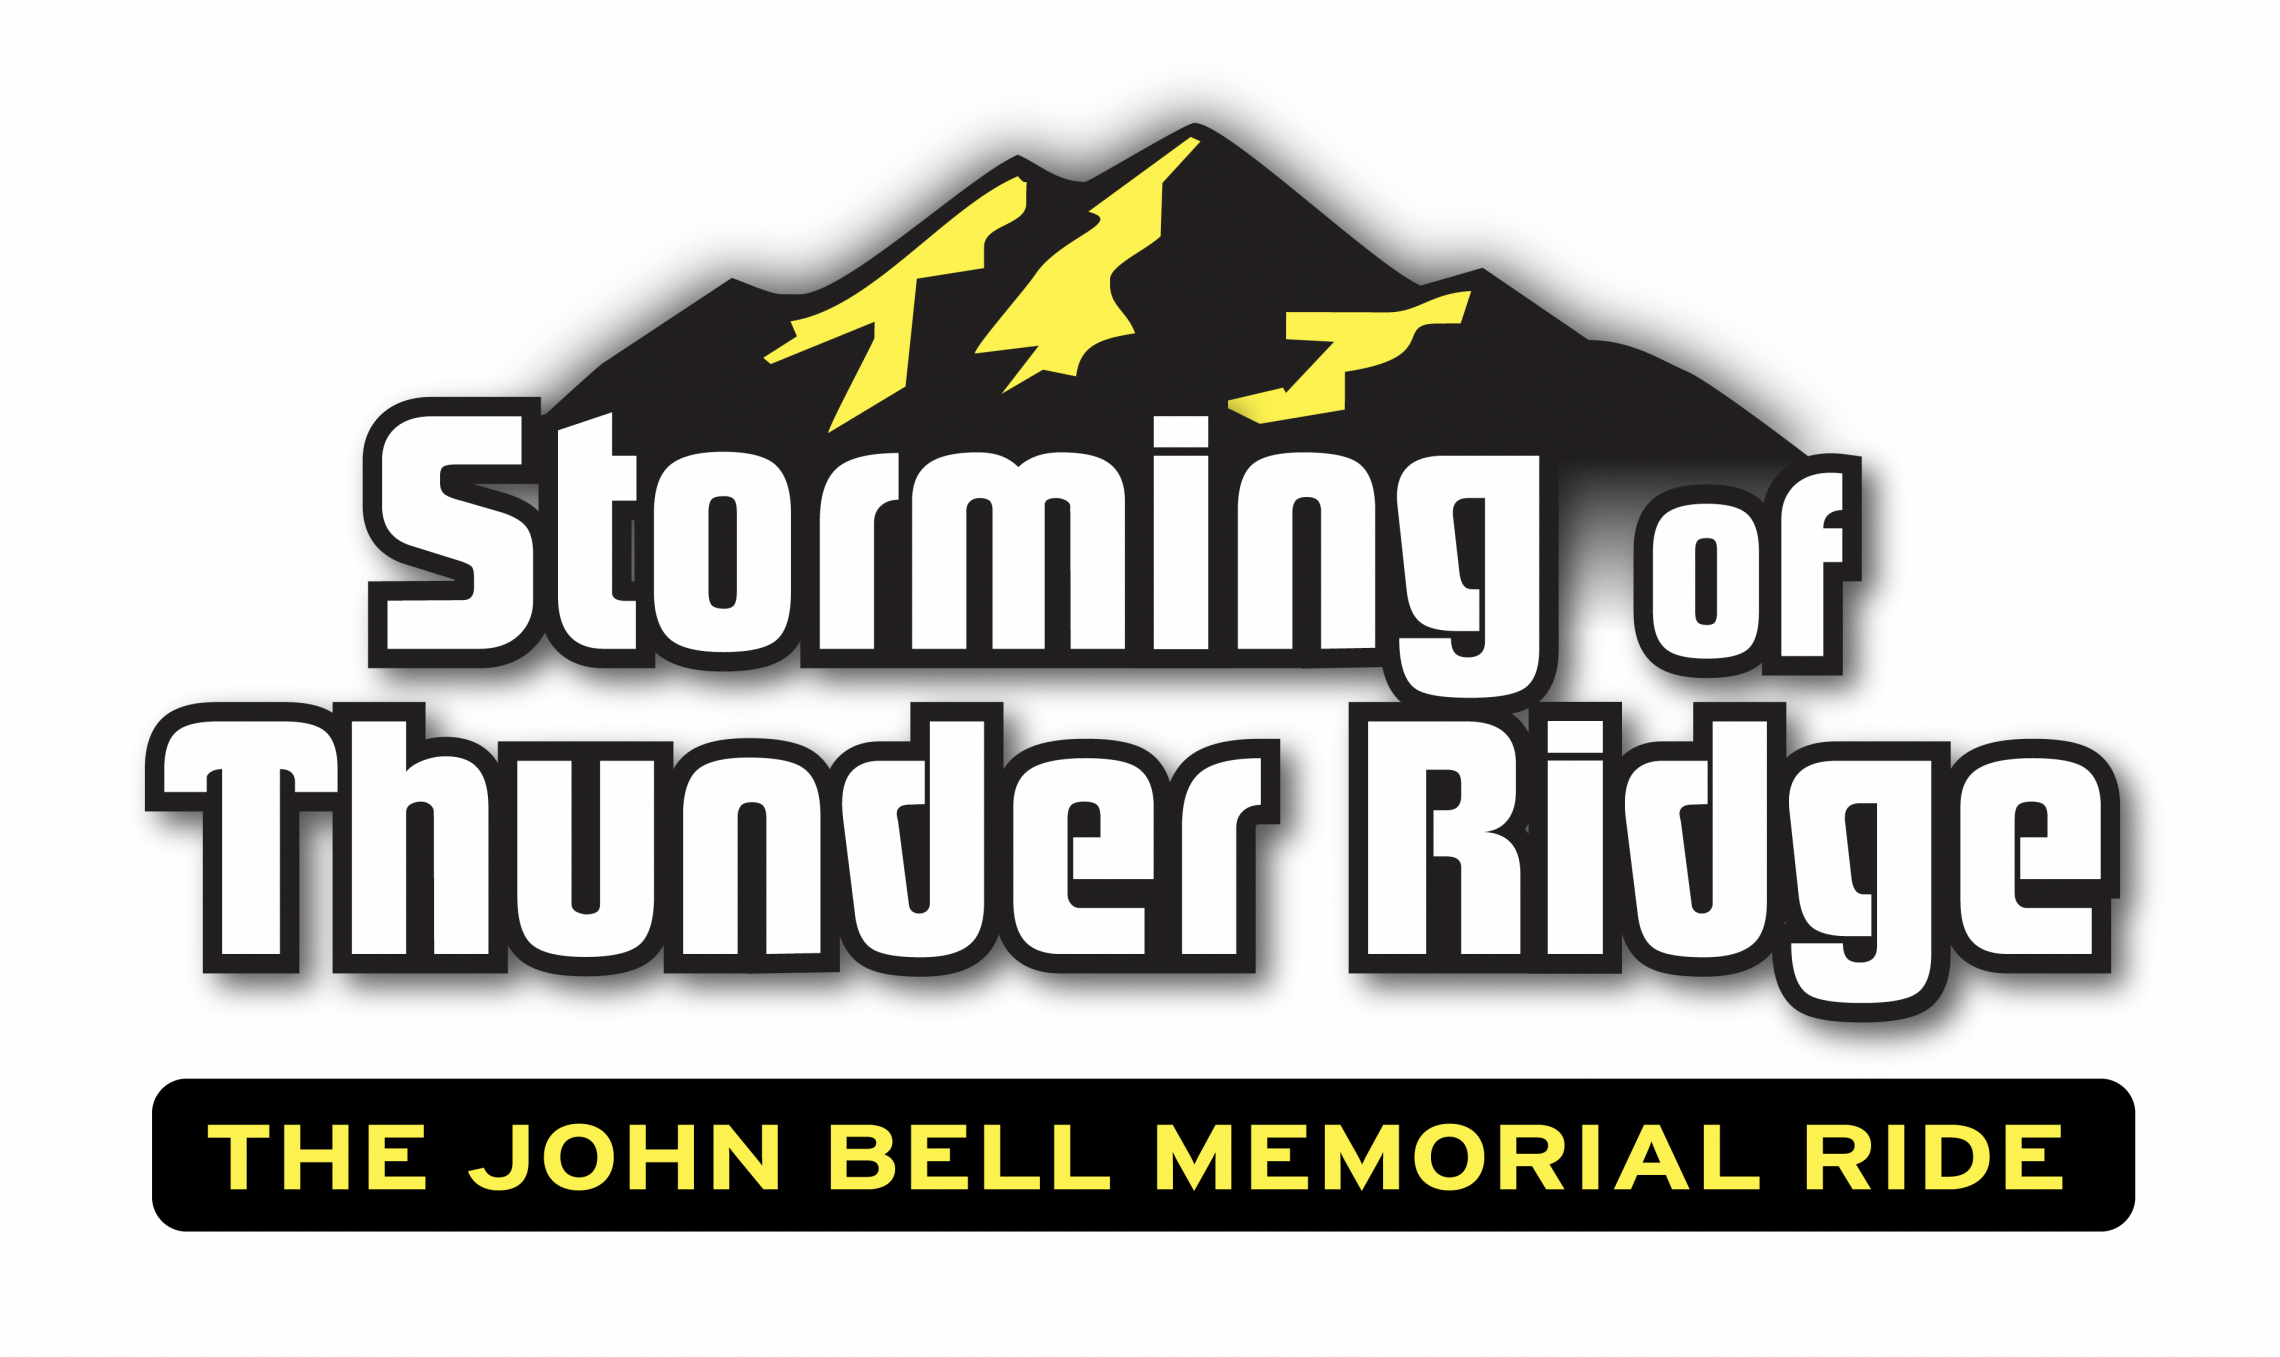 John bell memorial ride